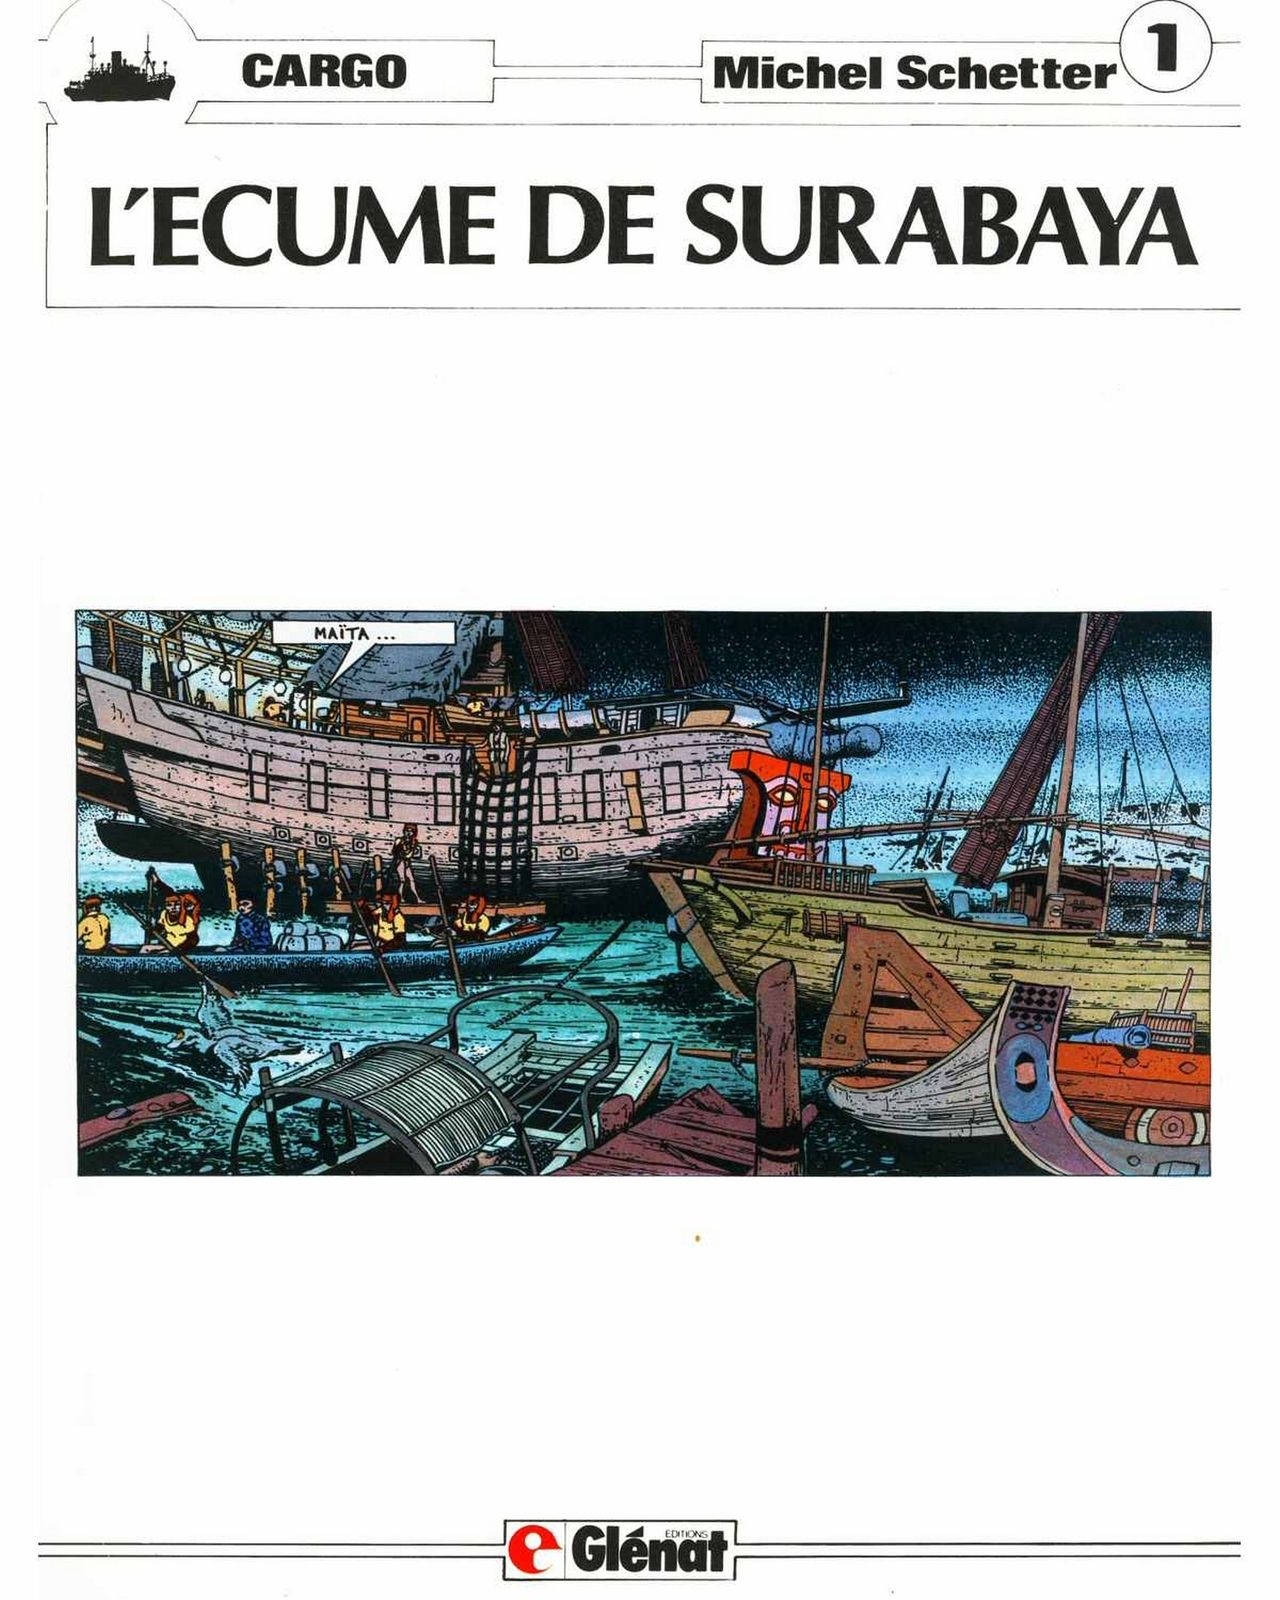 Michel Schetter - Cargo #1 - L'Écume de Surabaya [French] 2